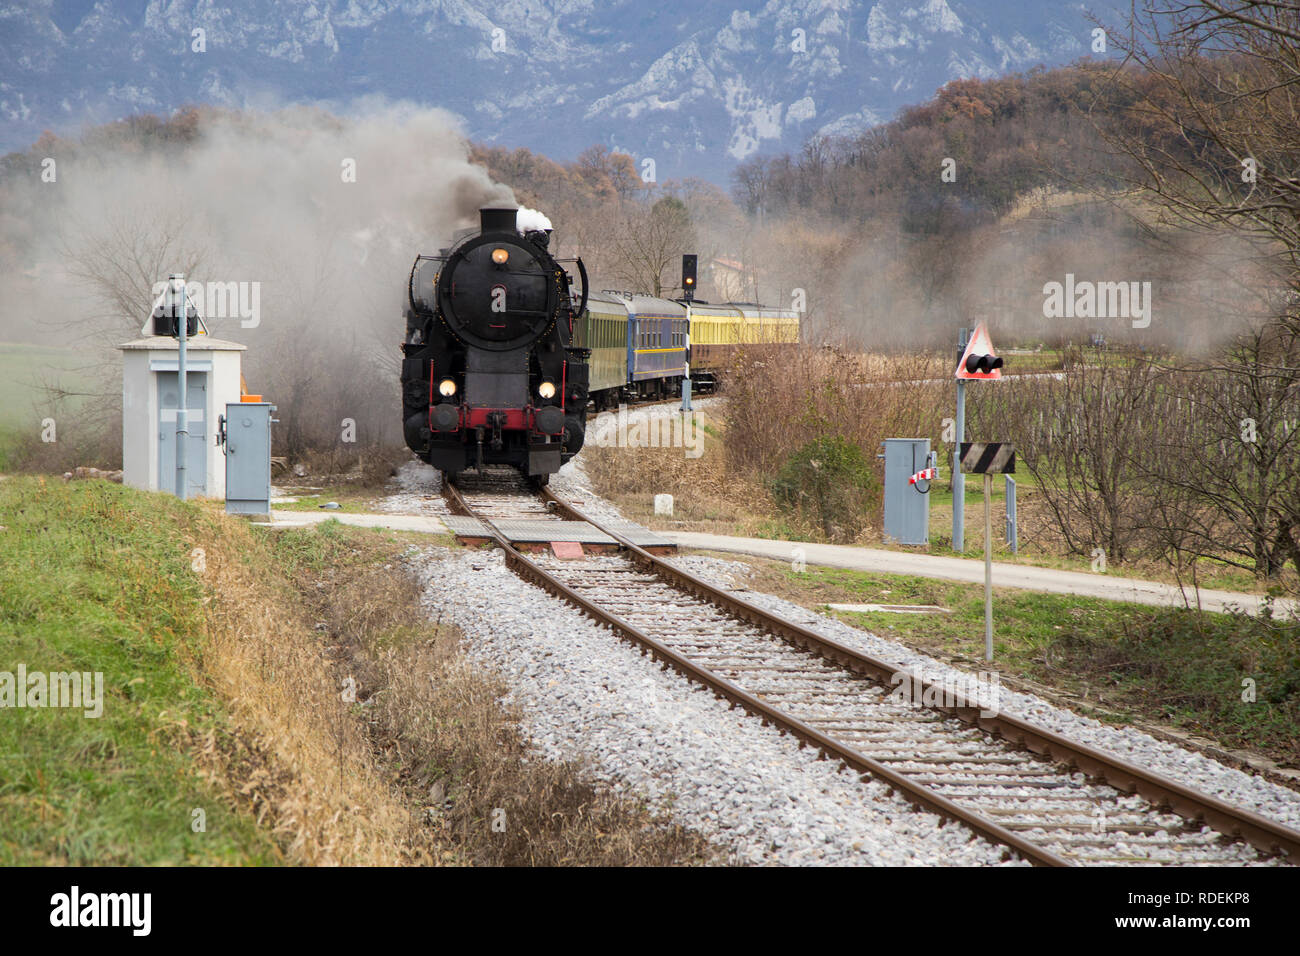 Il vecchio treno a vapore lasciando la stazione ferroviaria di Ajdovščina, Slovenia, l'Europa. Un sacco di nero e grigio vapore nascondendo la locomotiva, frame completo Foto Stock